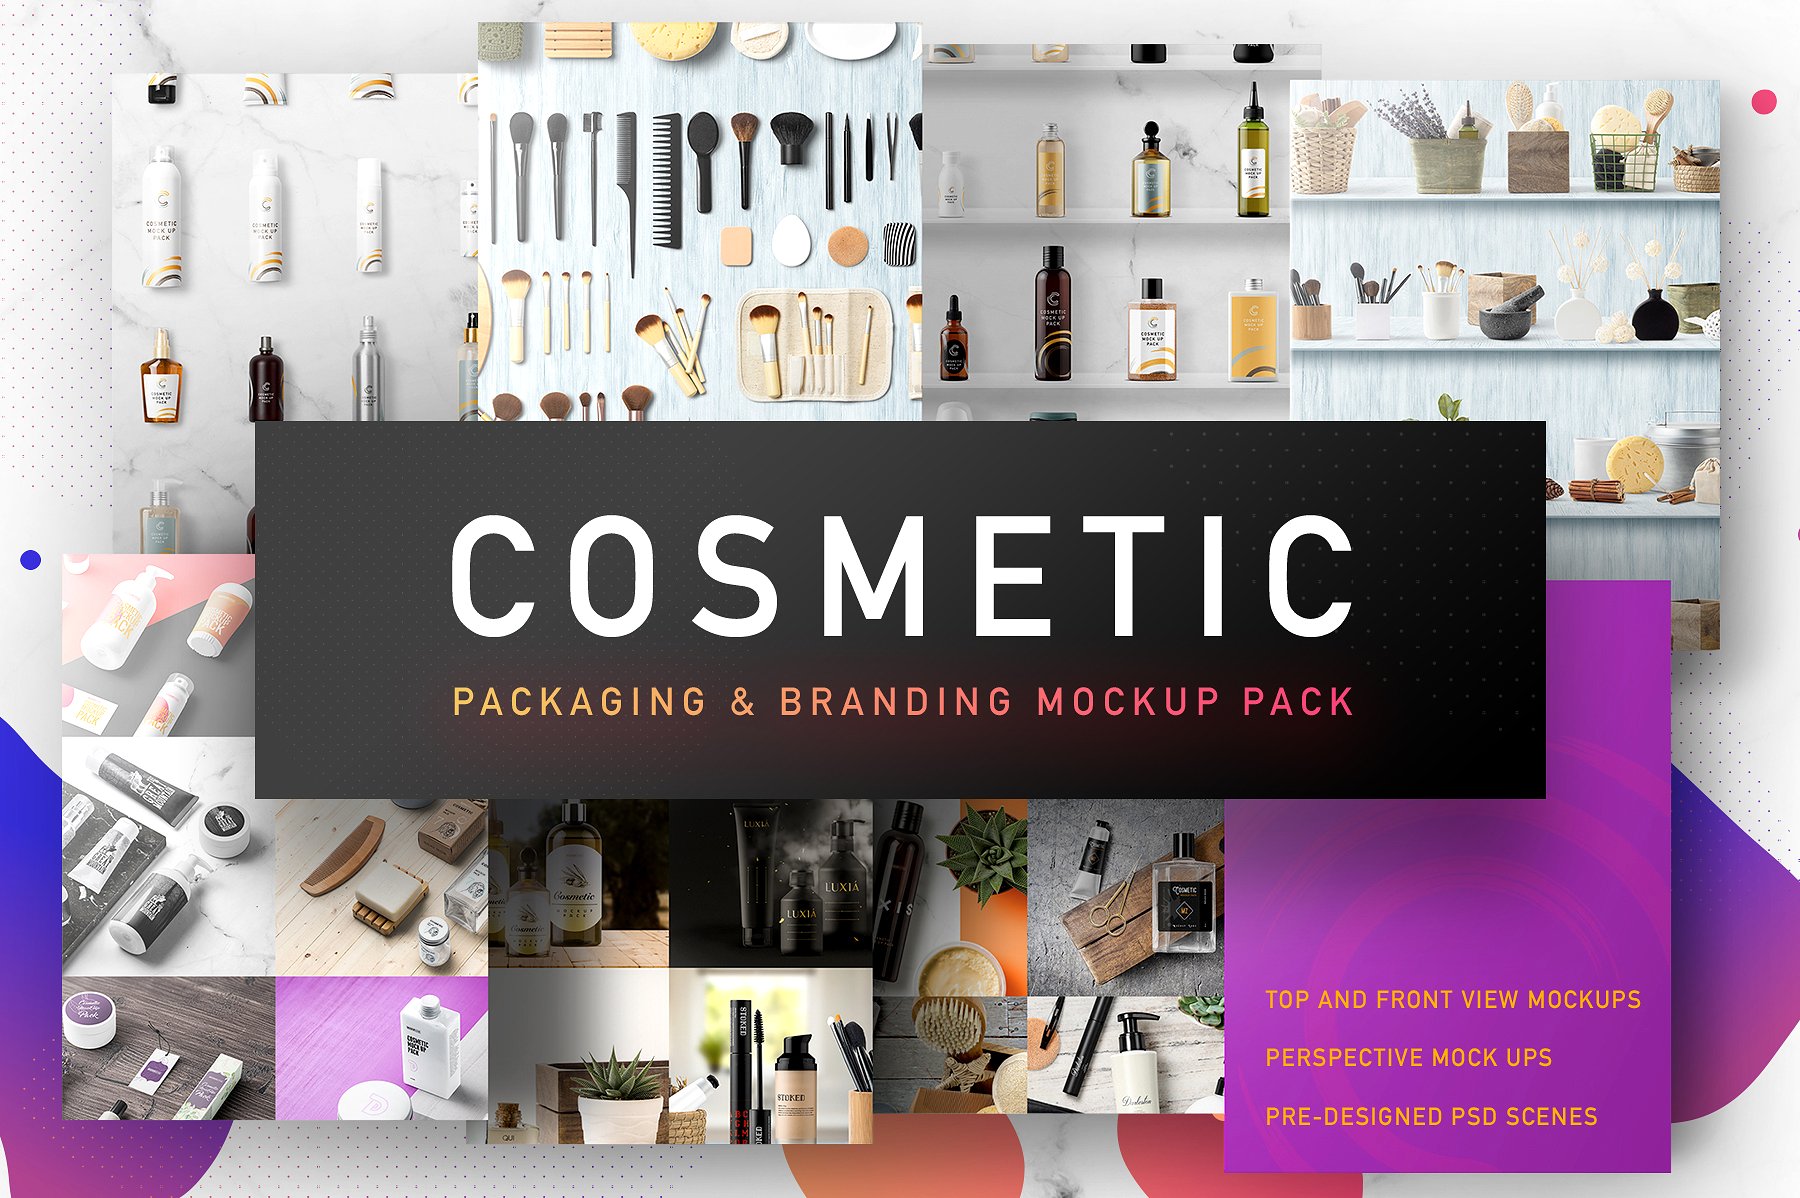 史上最全高端化妆品包装PSD样机模版VI品牌包装 Cosmetic Packaging Branding MockUp插图